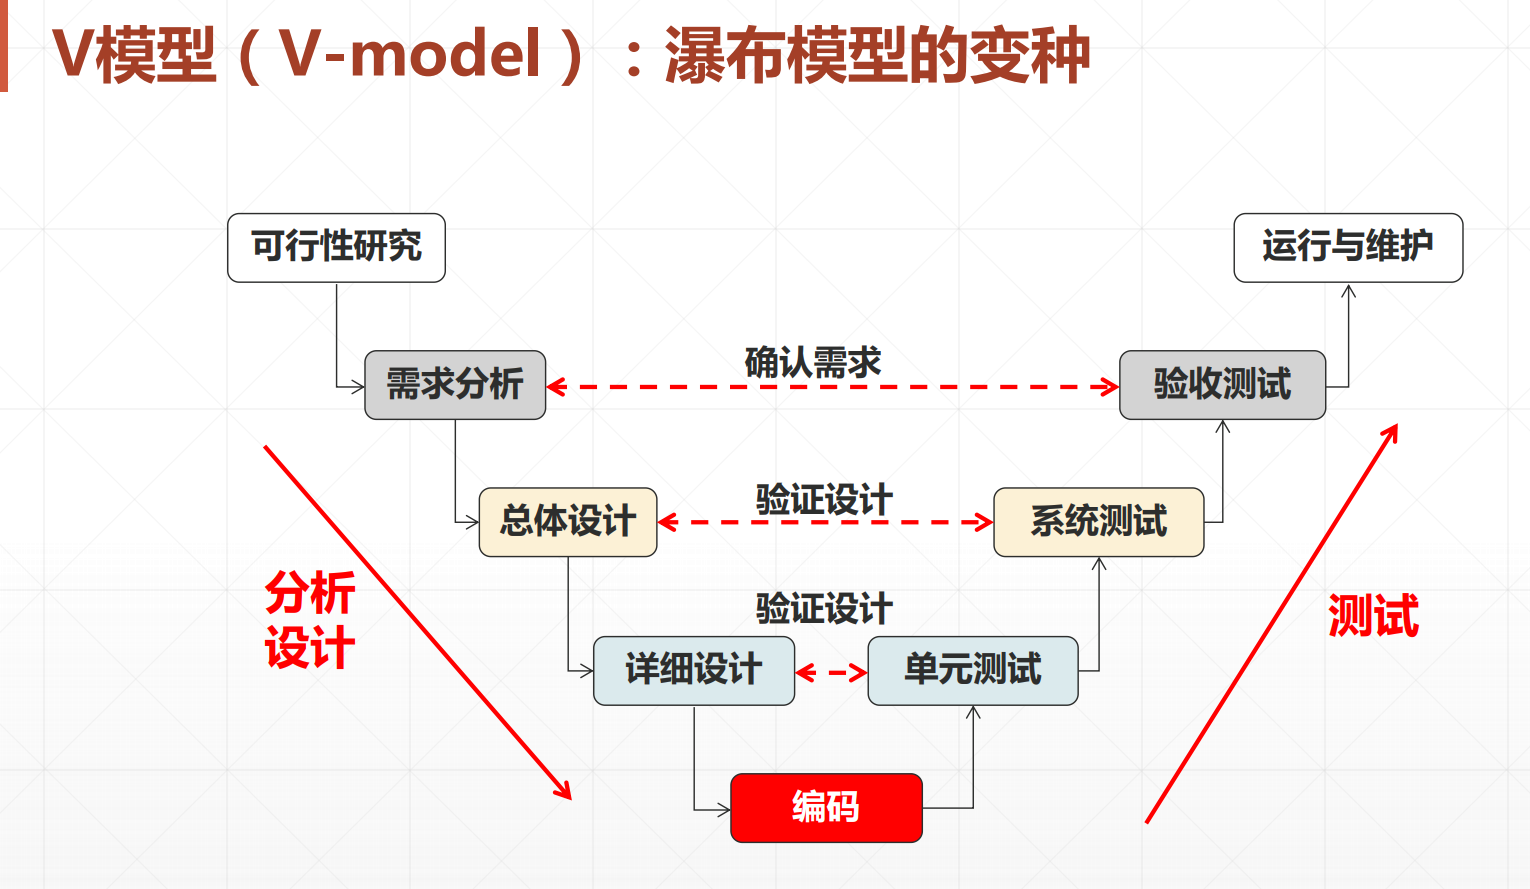 瀑布模型瀑布模型(waterfall model) 是一个软件生命周期模型,开发